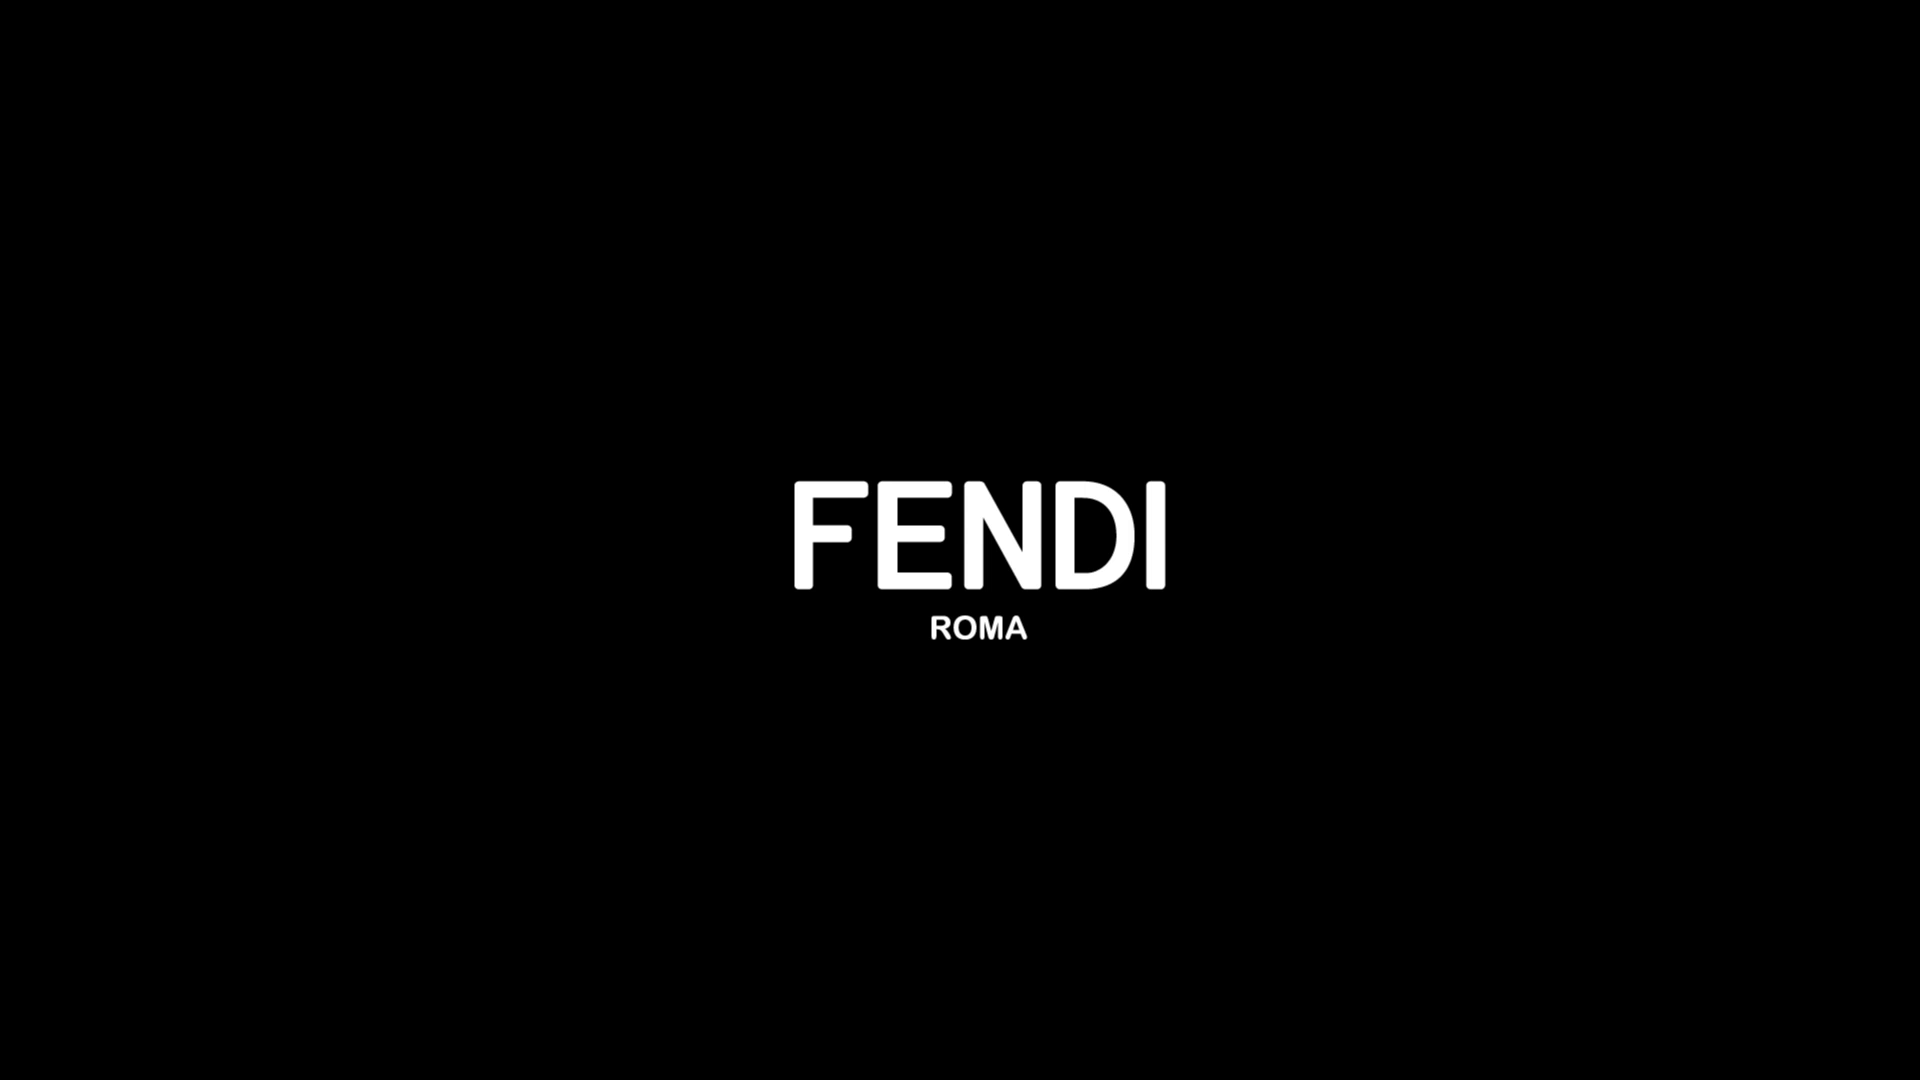 Fendi Wallpaper HD. Full HD Picture